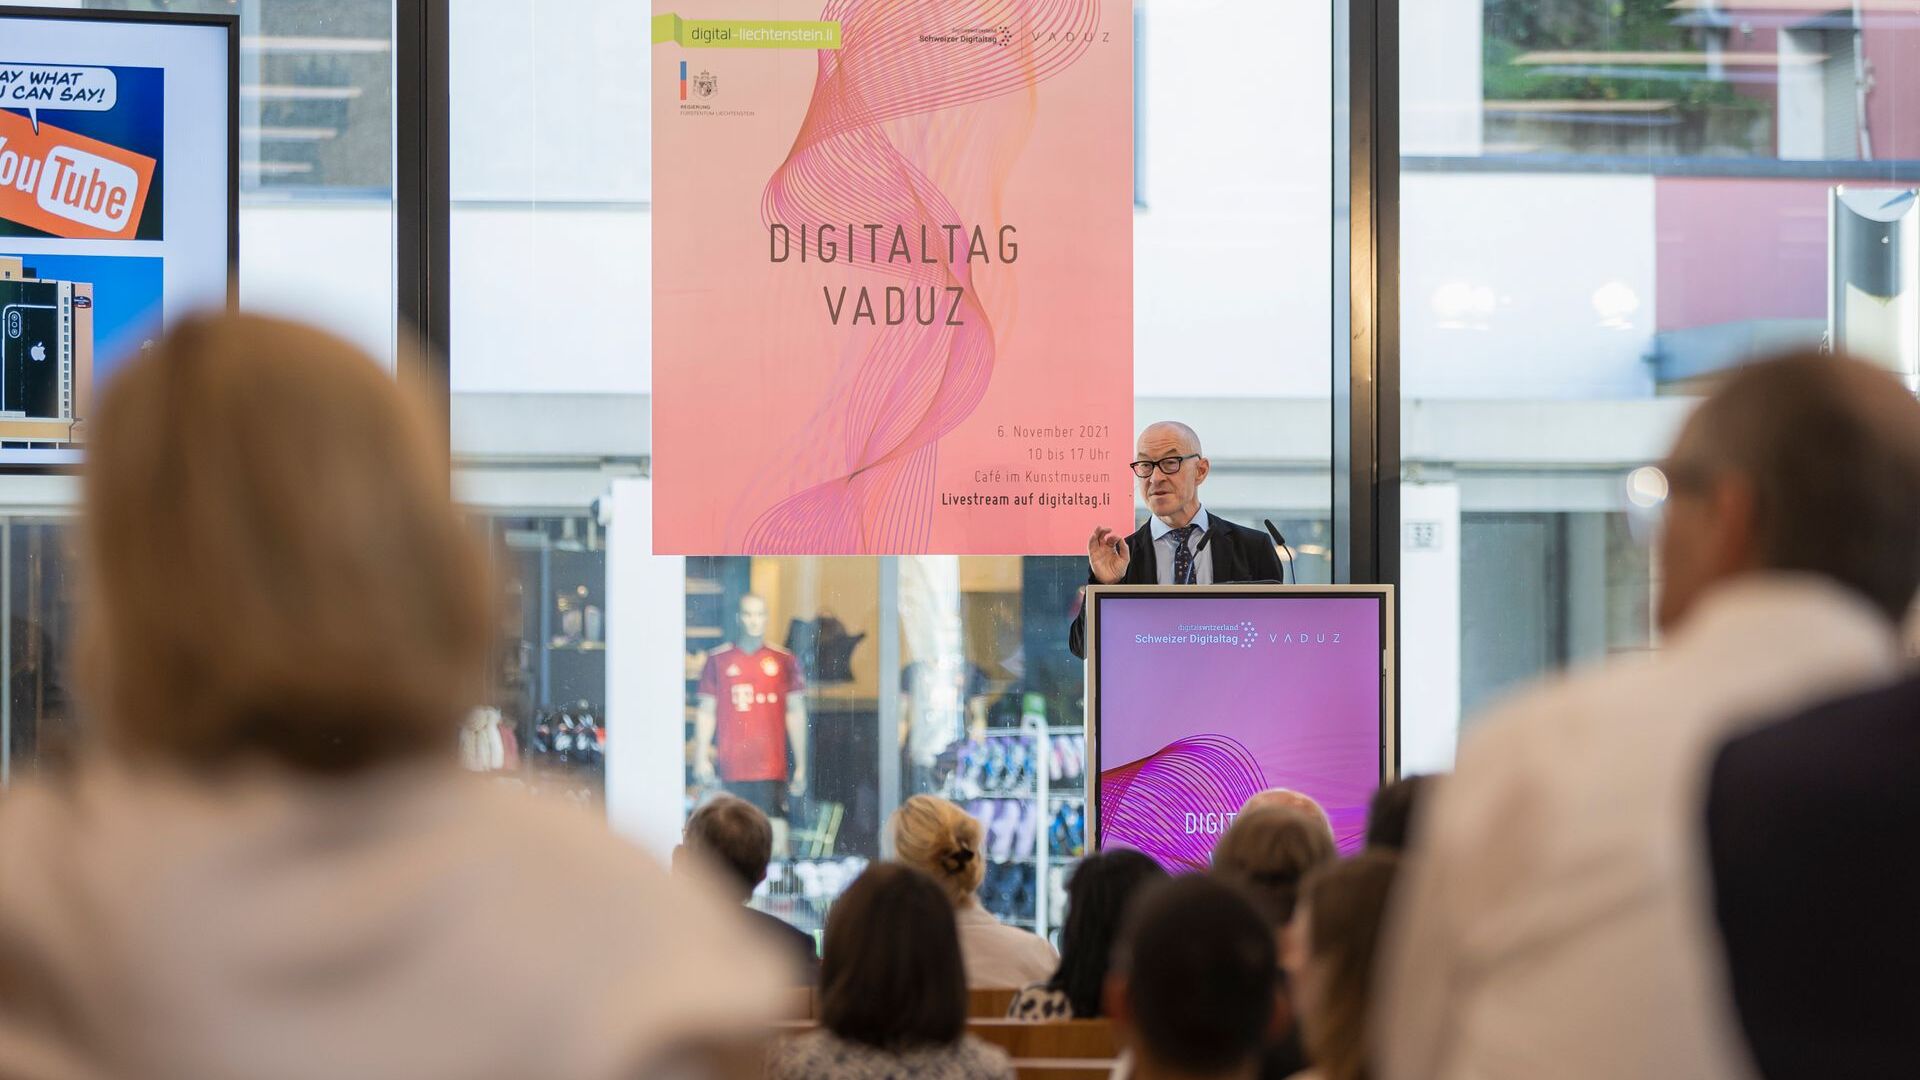 "Digitaltag Vaduz" ซึ่งได้รับการต้อนรับจาก Kunstmuseum เมืองหลวงของราชรัฐลิกเตนสไตน์ในวันเสาร์ที่ 6 พฤศจิกายน 2021 กระตุ้นความกระตือรือร้นของสาธารณชนและผู้พูดโดยเปรียบเทียบกับ "Swiss Digital Day" ของวันรุ่งขึ้น 10: การแทรกแซงของ David Bosshart นักอนาคตศาสตร์และผู้เชี่ยวชาญด้านเทรนด์ชาวเยอรมัน